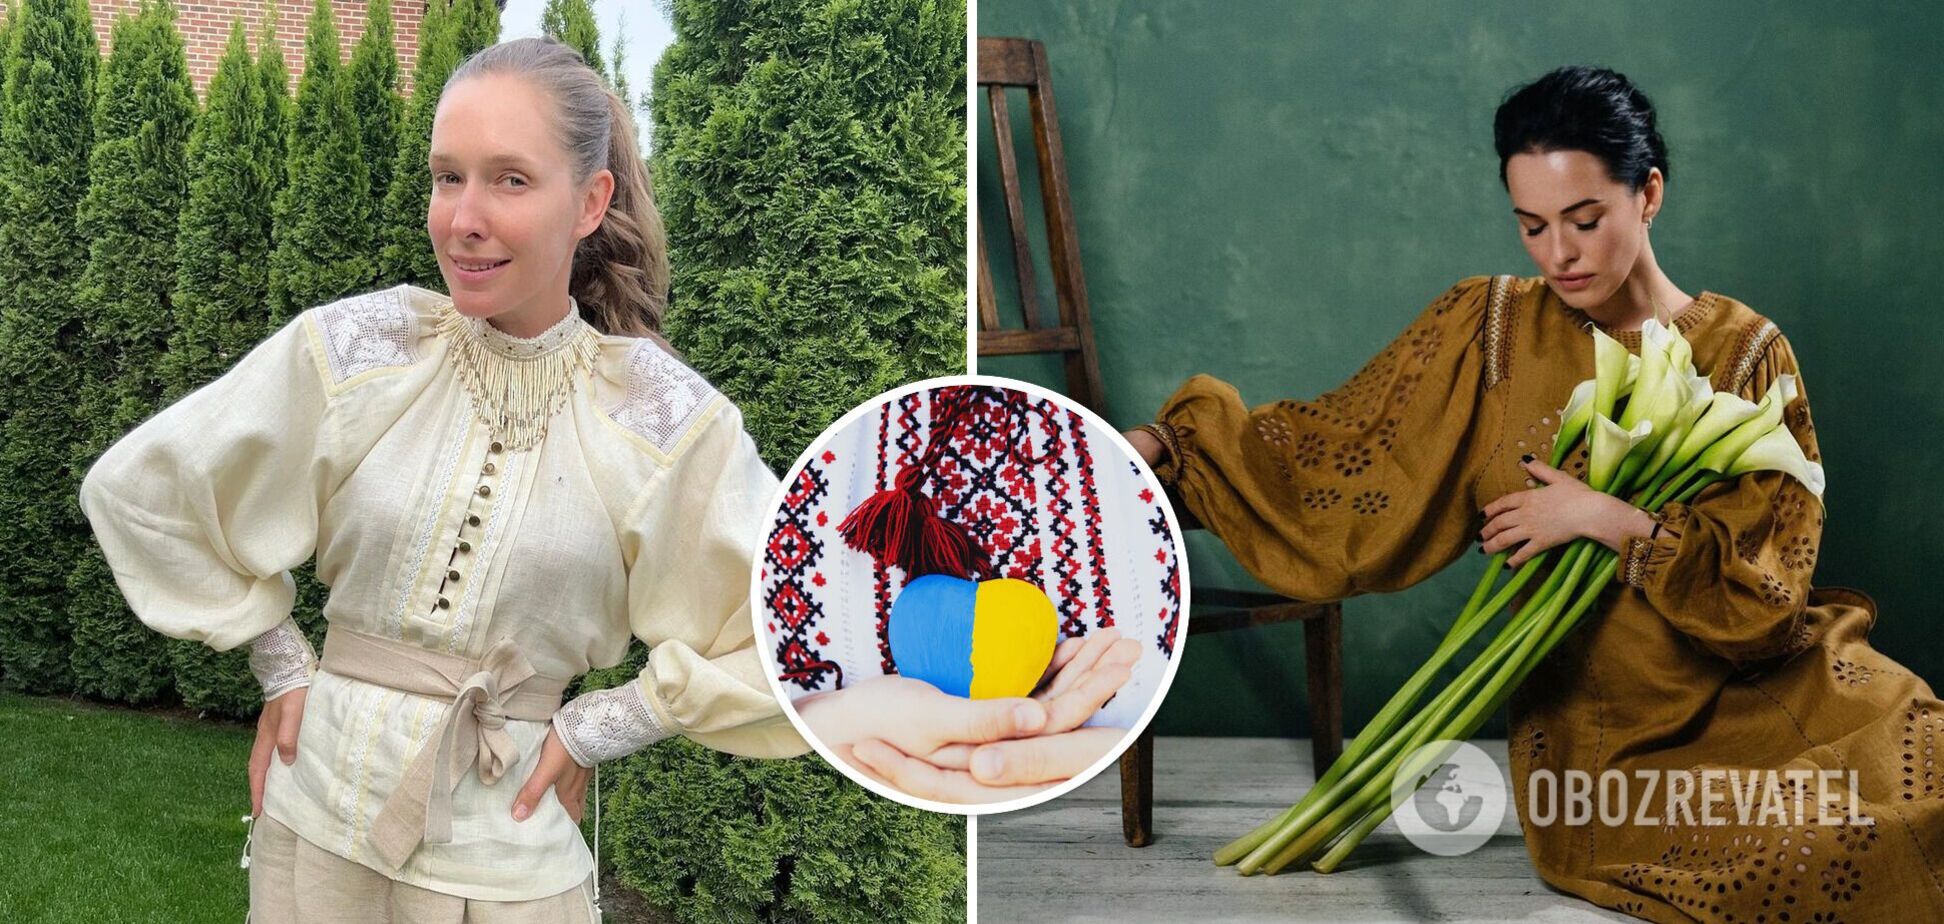 'Наш генетический код, национальная гордость': украинские звезды поразили своими образами в День вышиванки. Фото